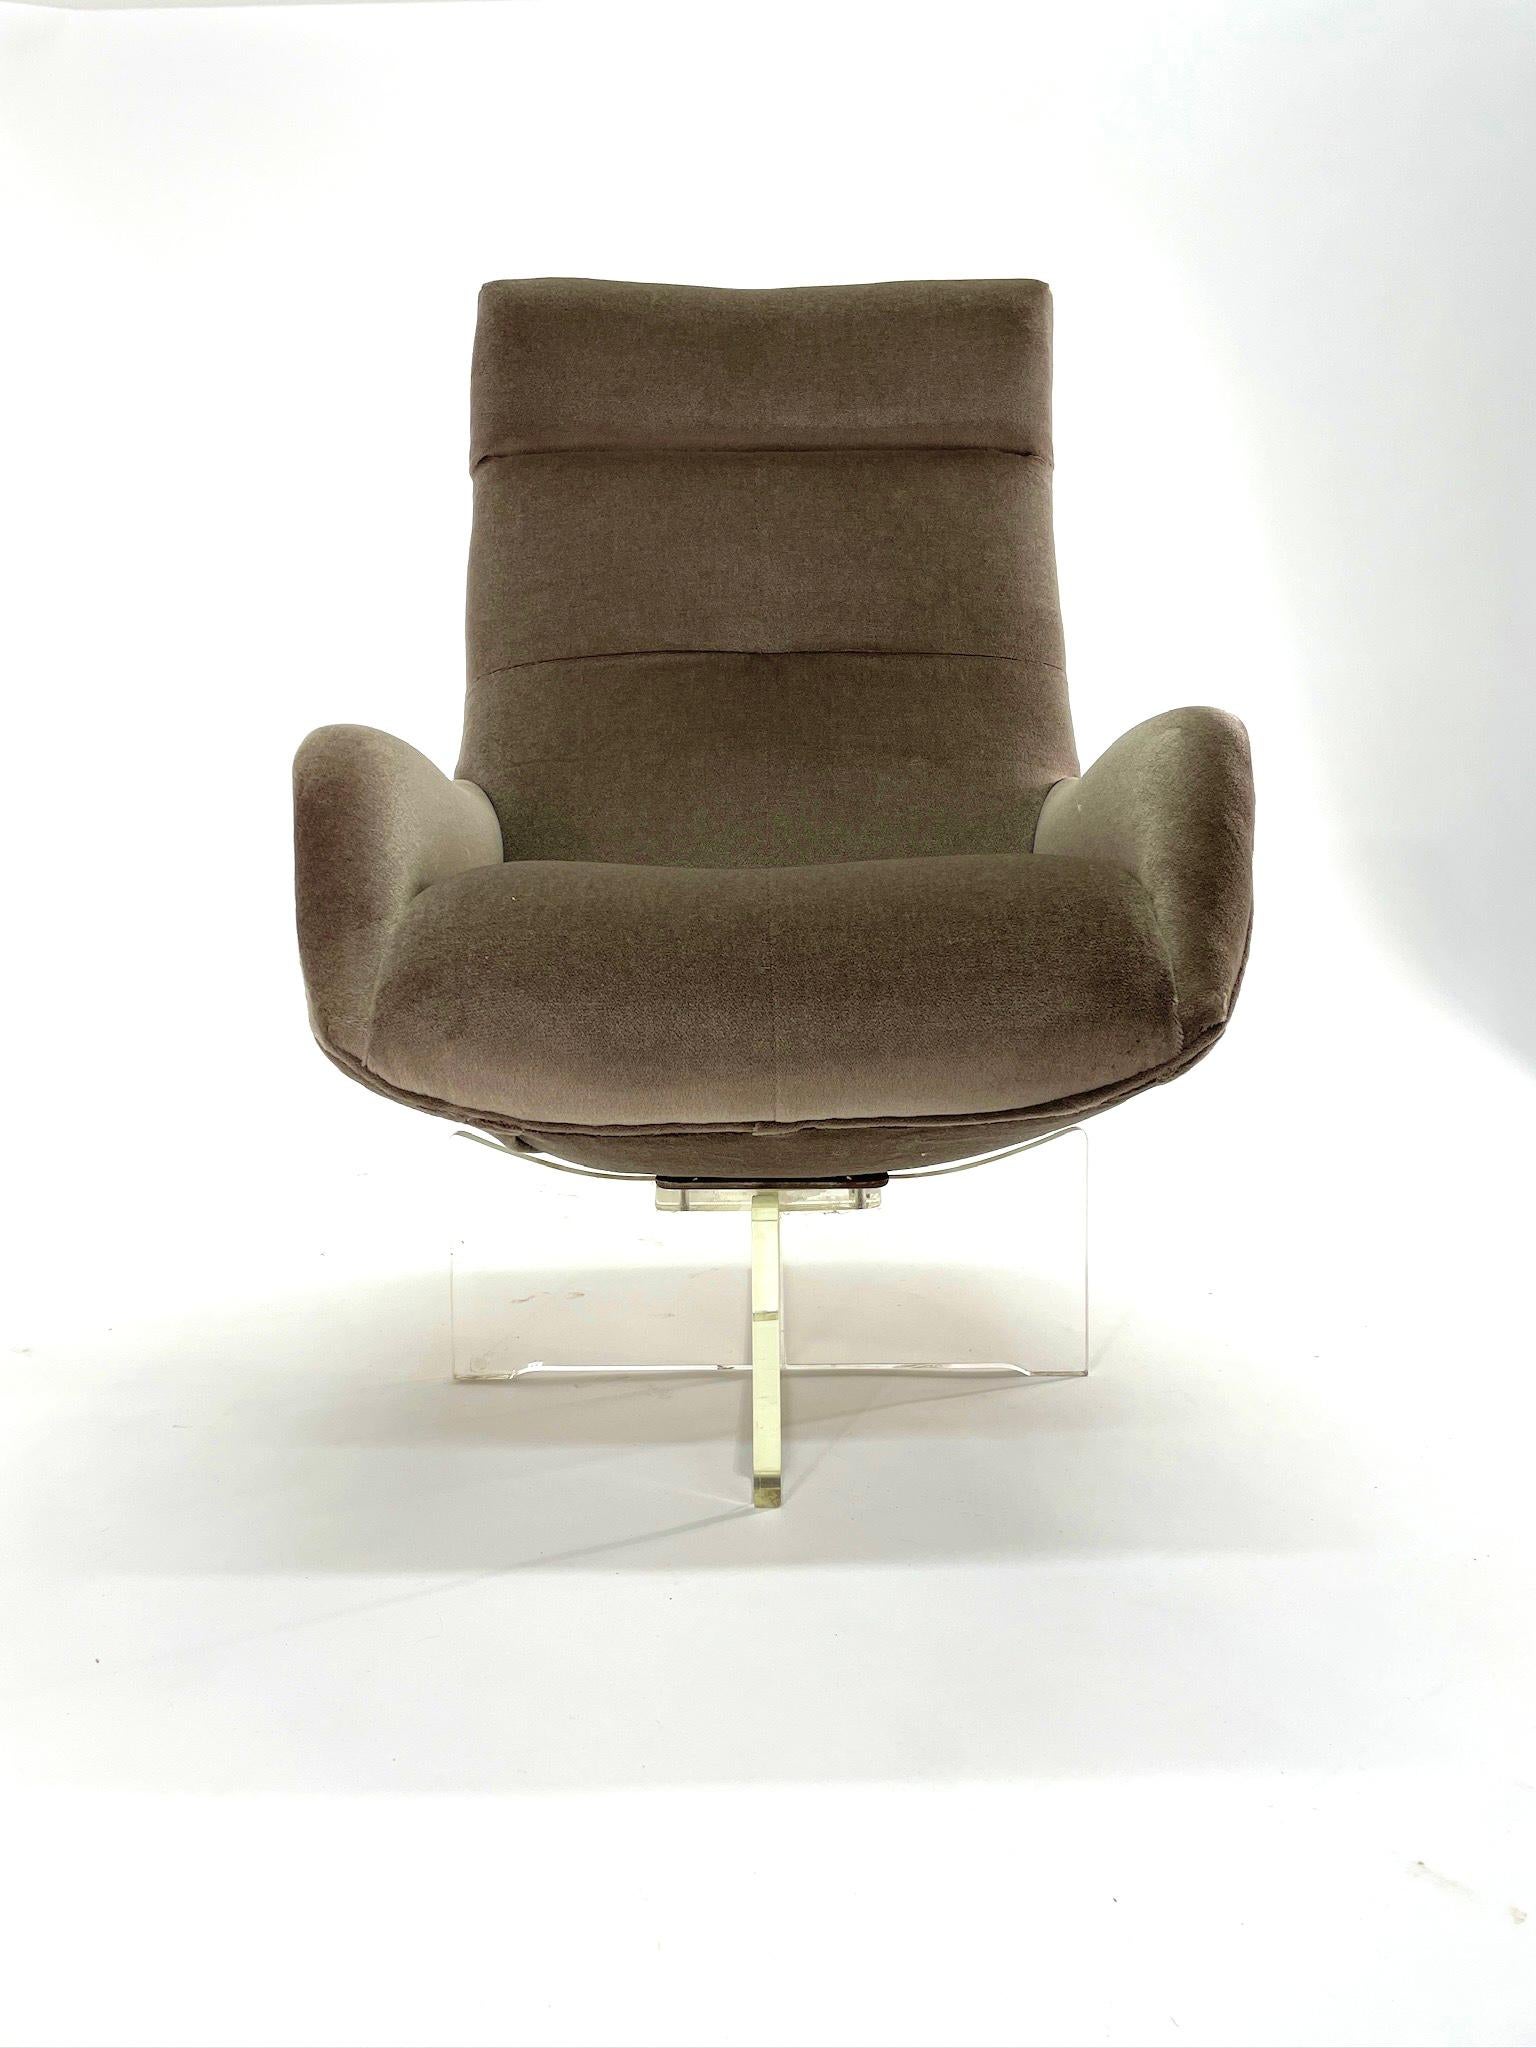 Le modèle Erica Contour High Back Swivel de Vladimir Kagan, présenté pour la première fois en 1967, est un modèle qui soutient le corps et repose sur une base en Lucite en forme de X. Cette chaise incroyablement confortable est destinée à créer